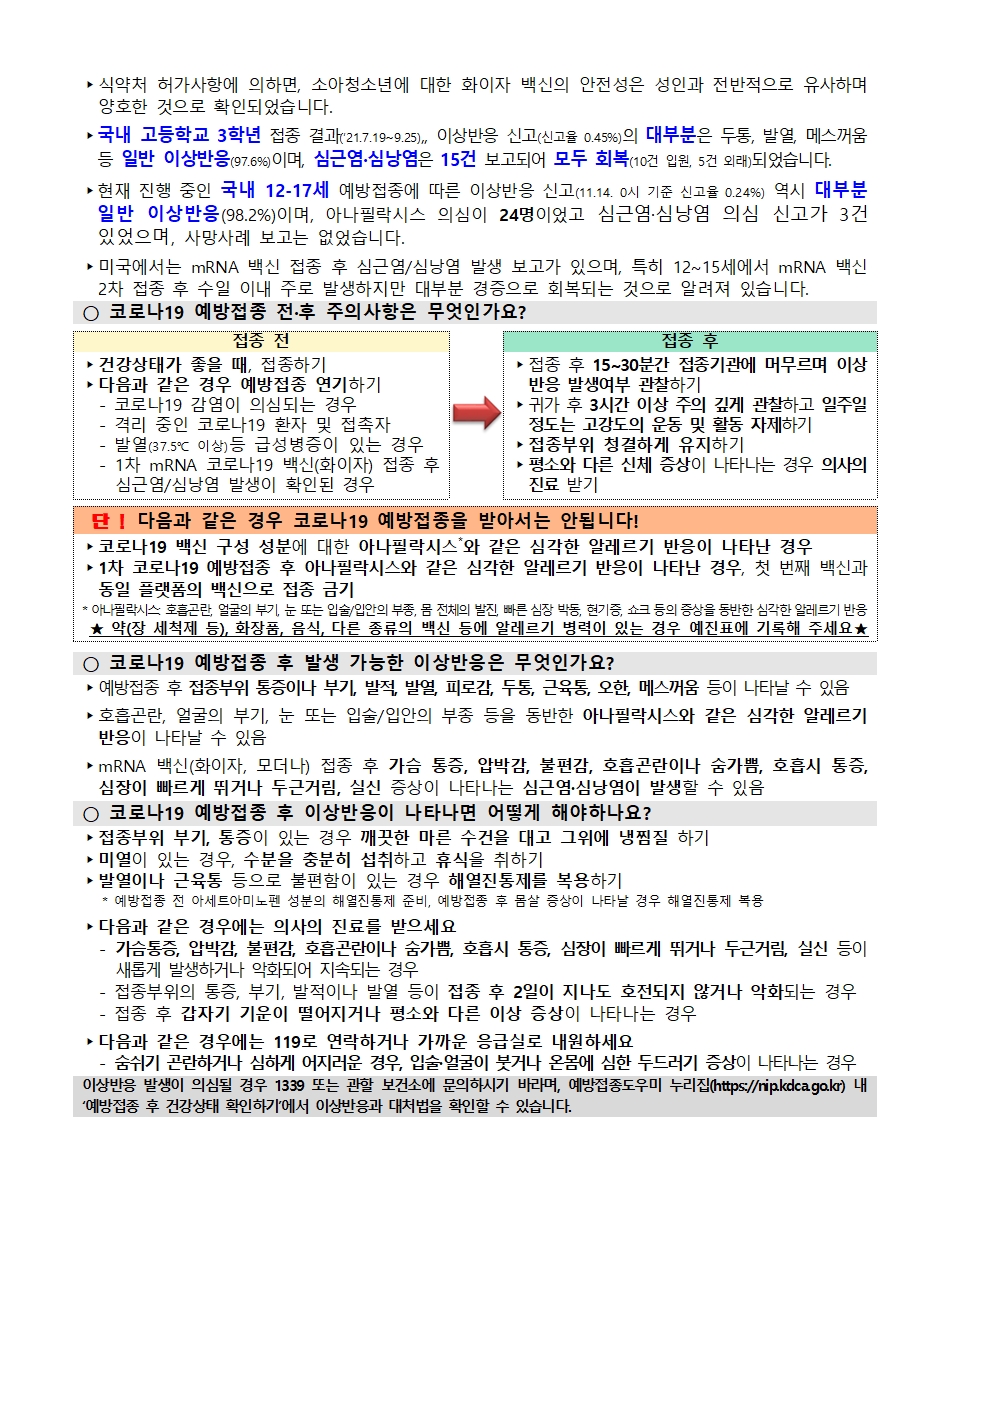 코로나19 예방접종 추가 사전예약 안내 - 복사본003